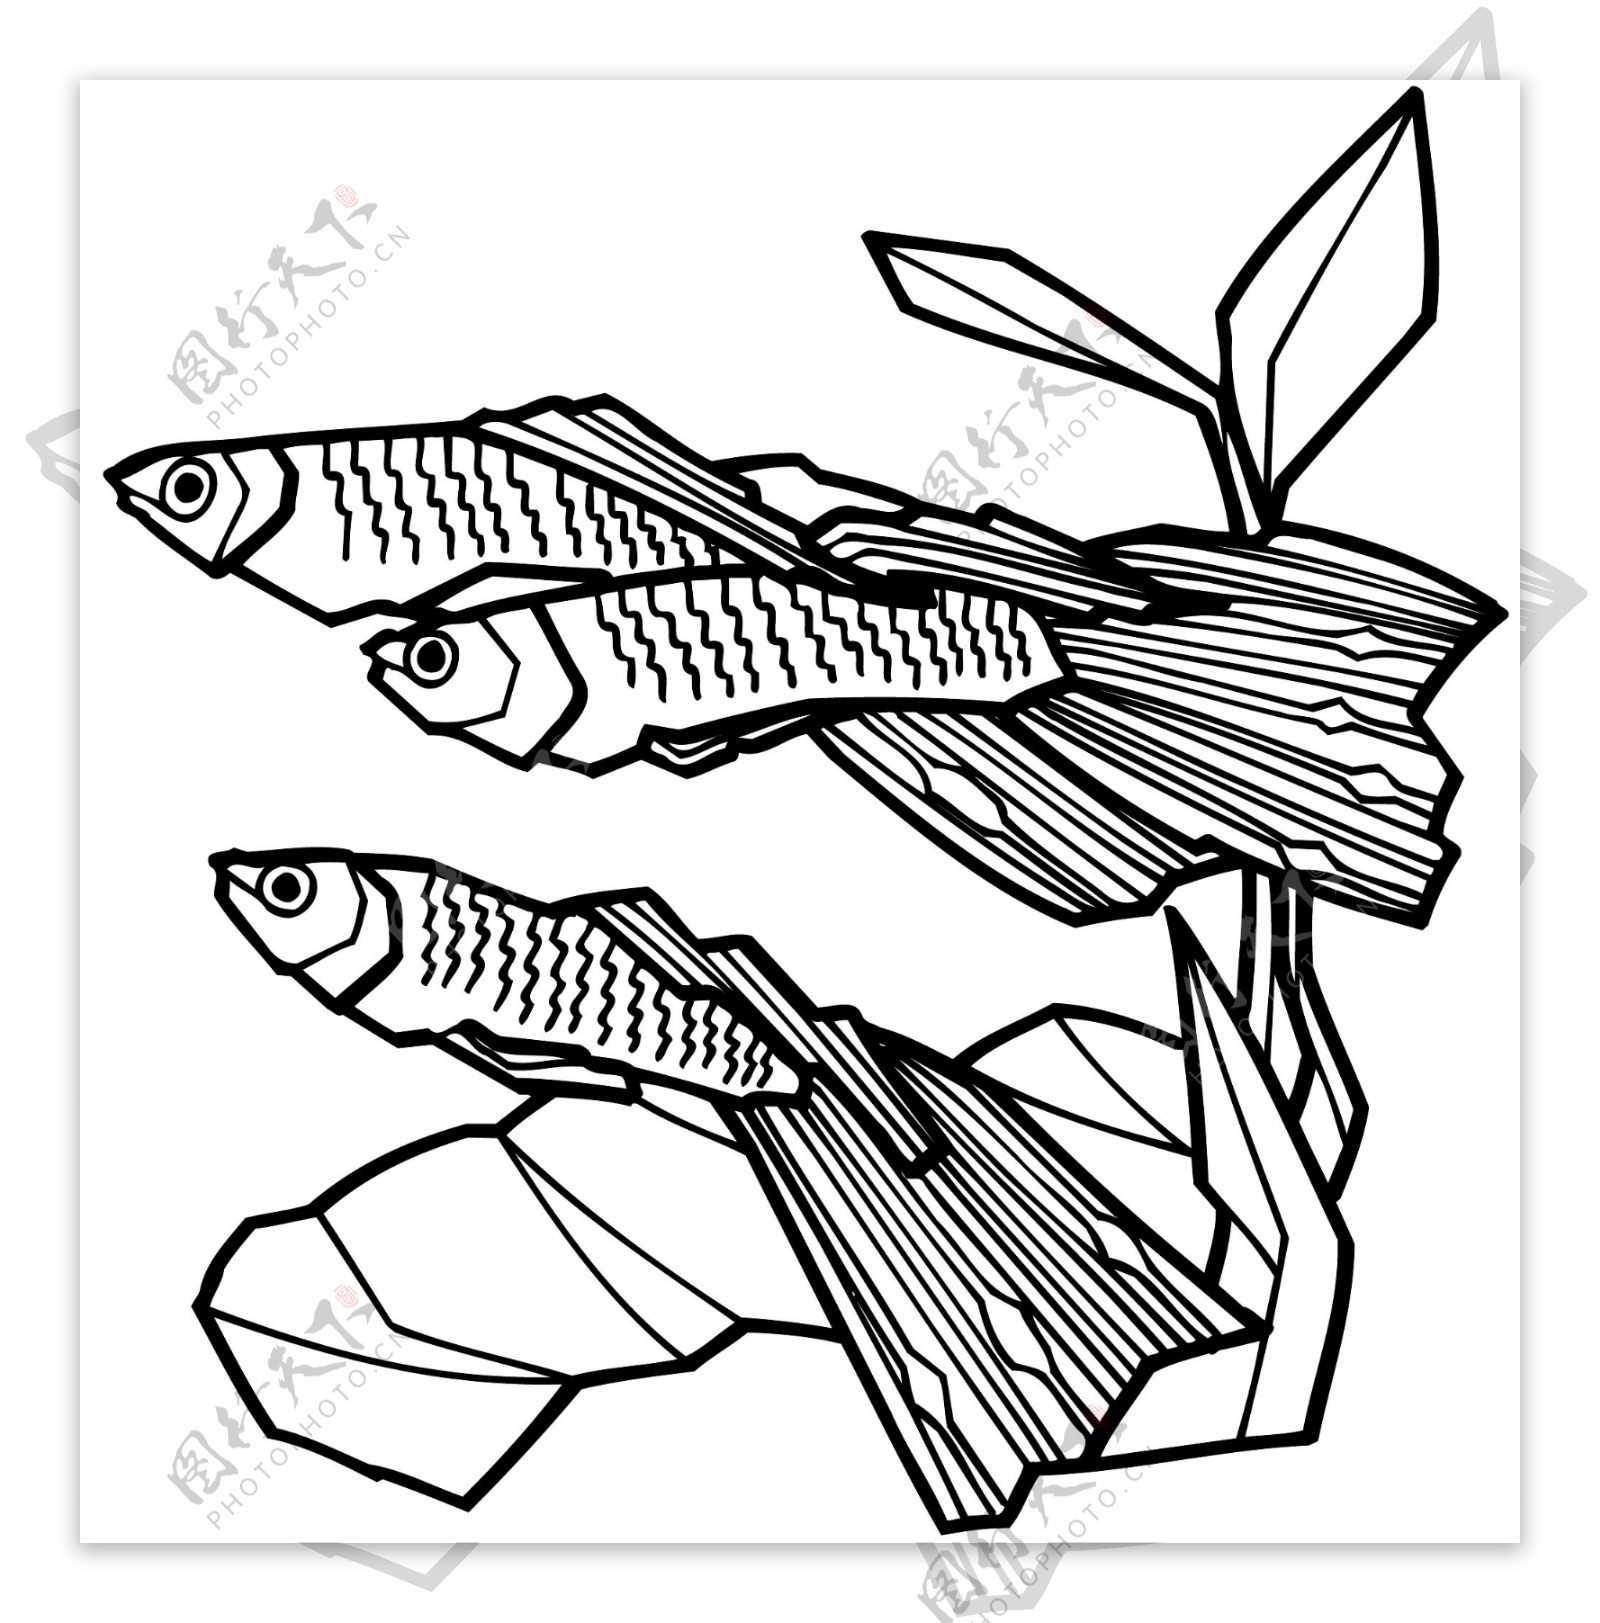 鱼水中动物矢量素材eps格式0068